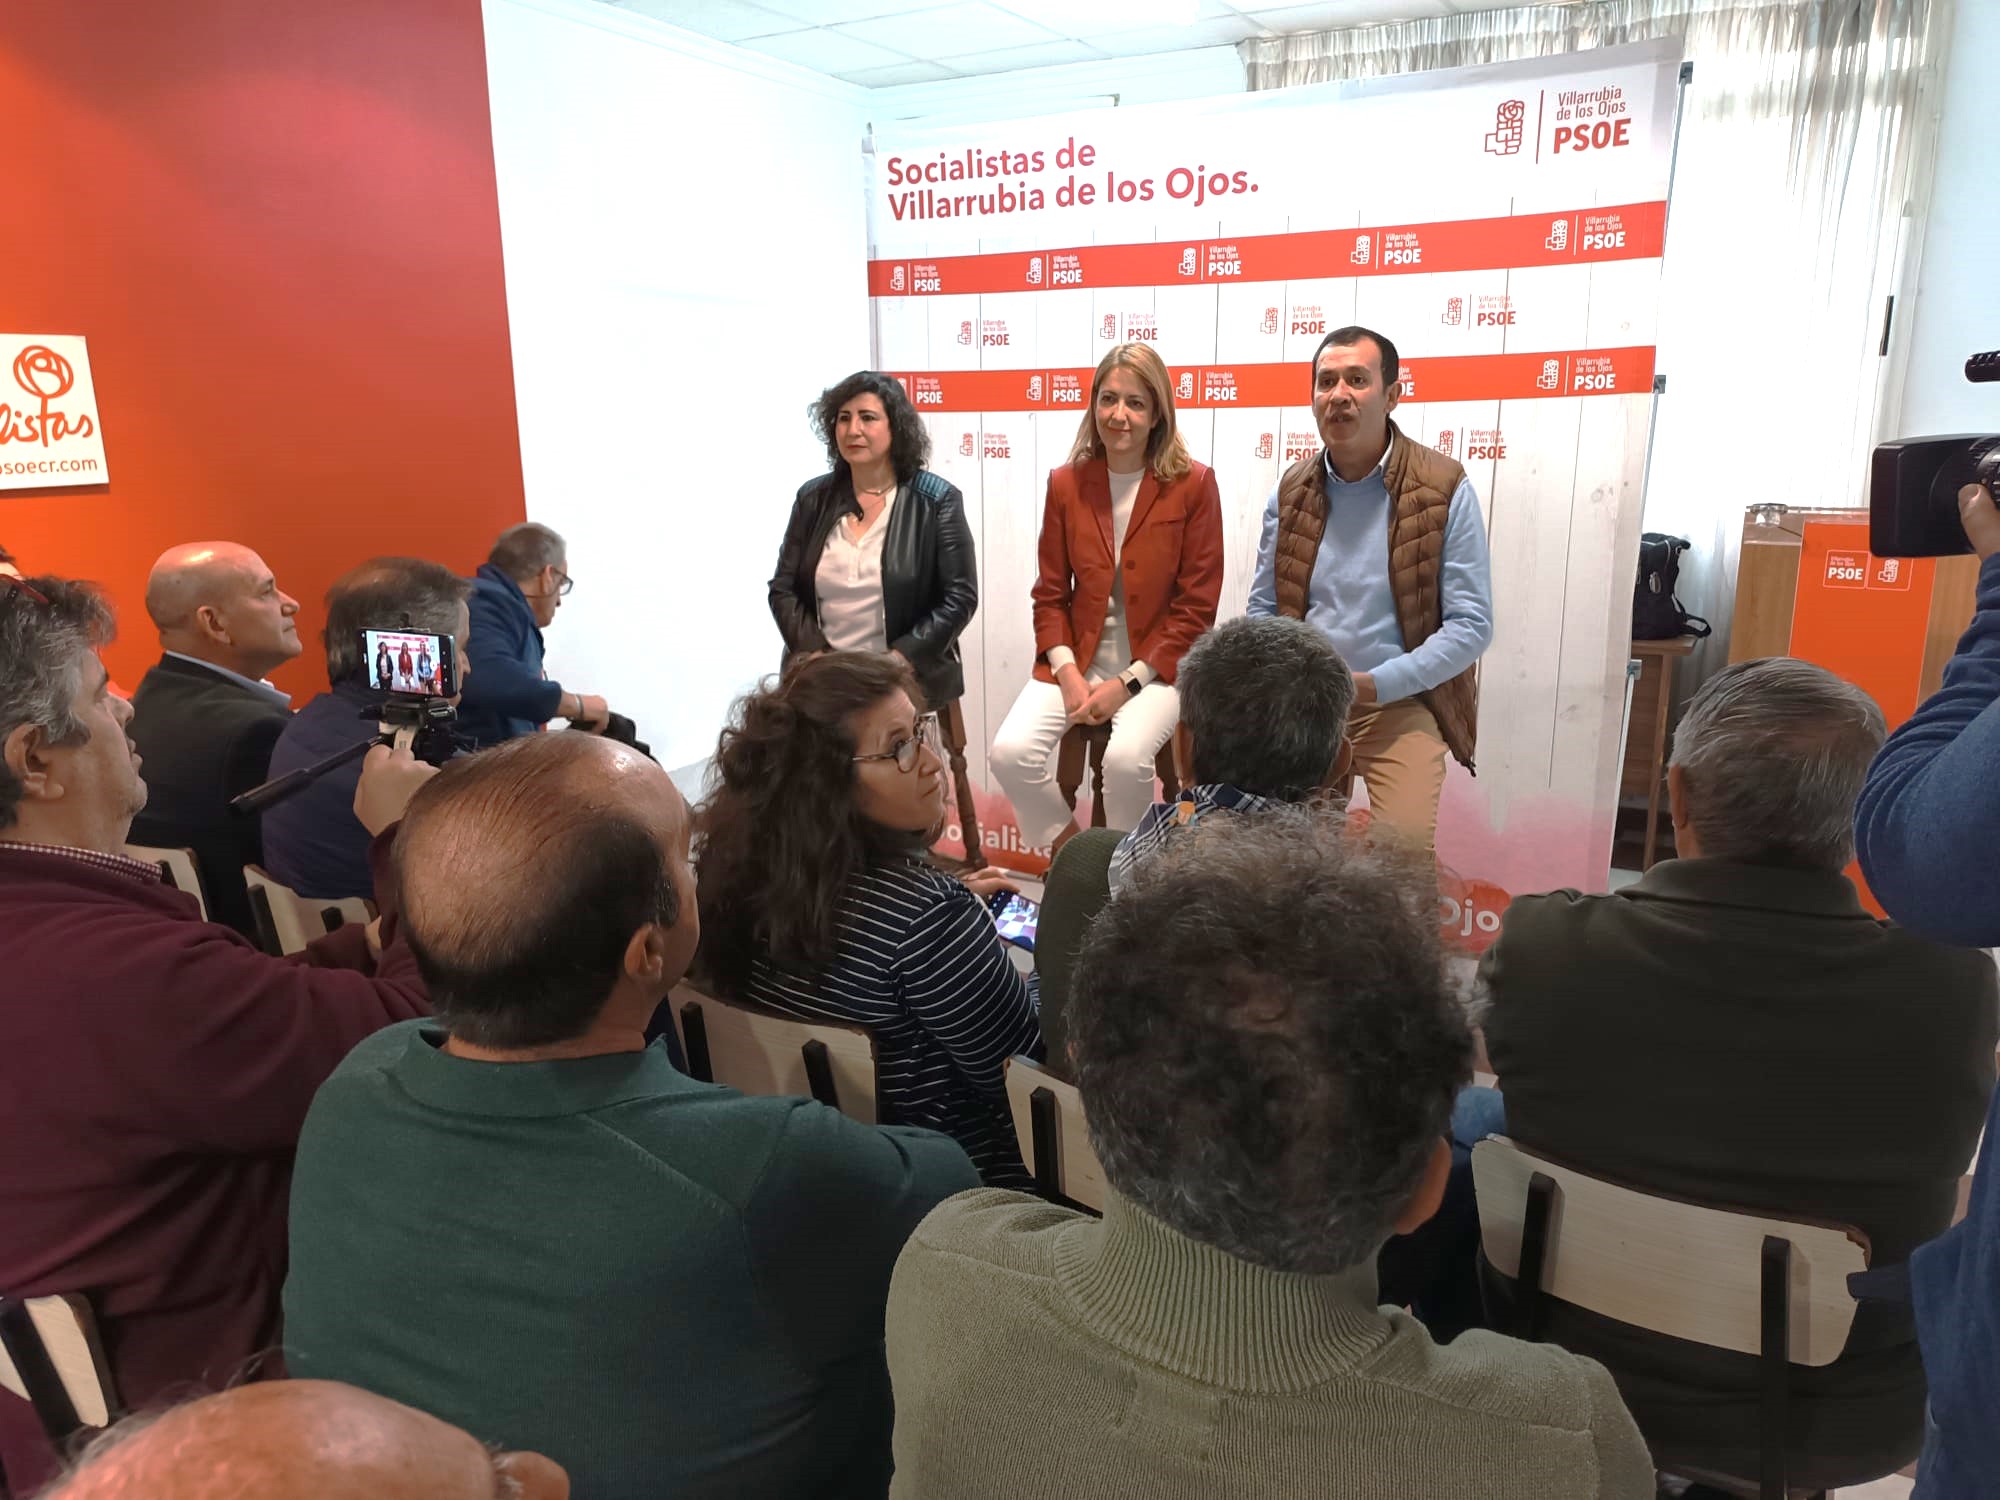 Maestre reivindica que el PSOE es el partido “más firme” en la defensa de los derechos laborales y sociales de los trabajadores